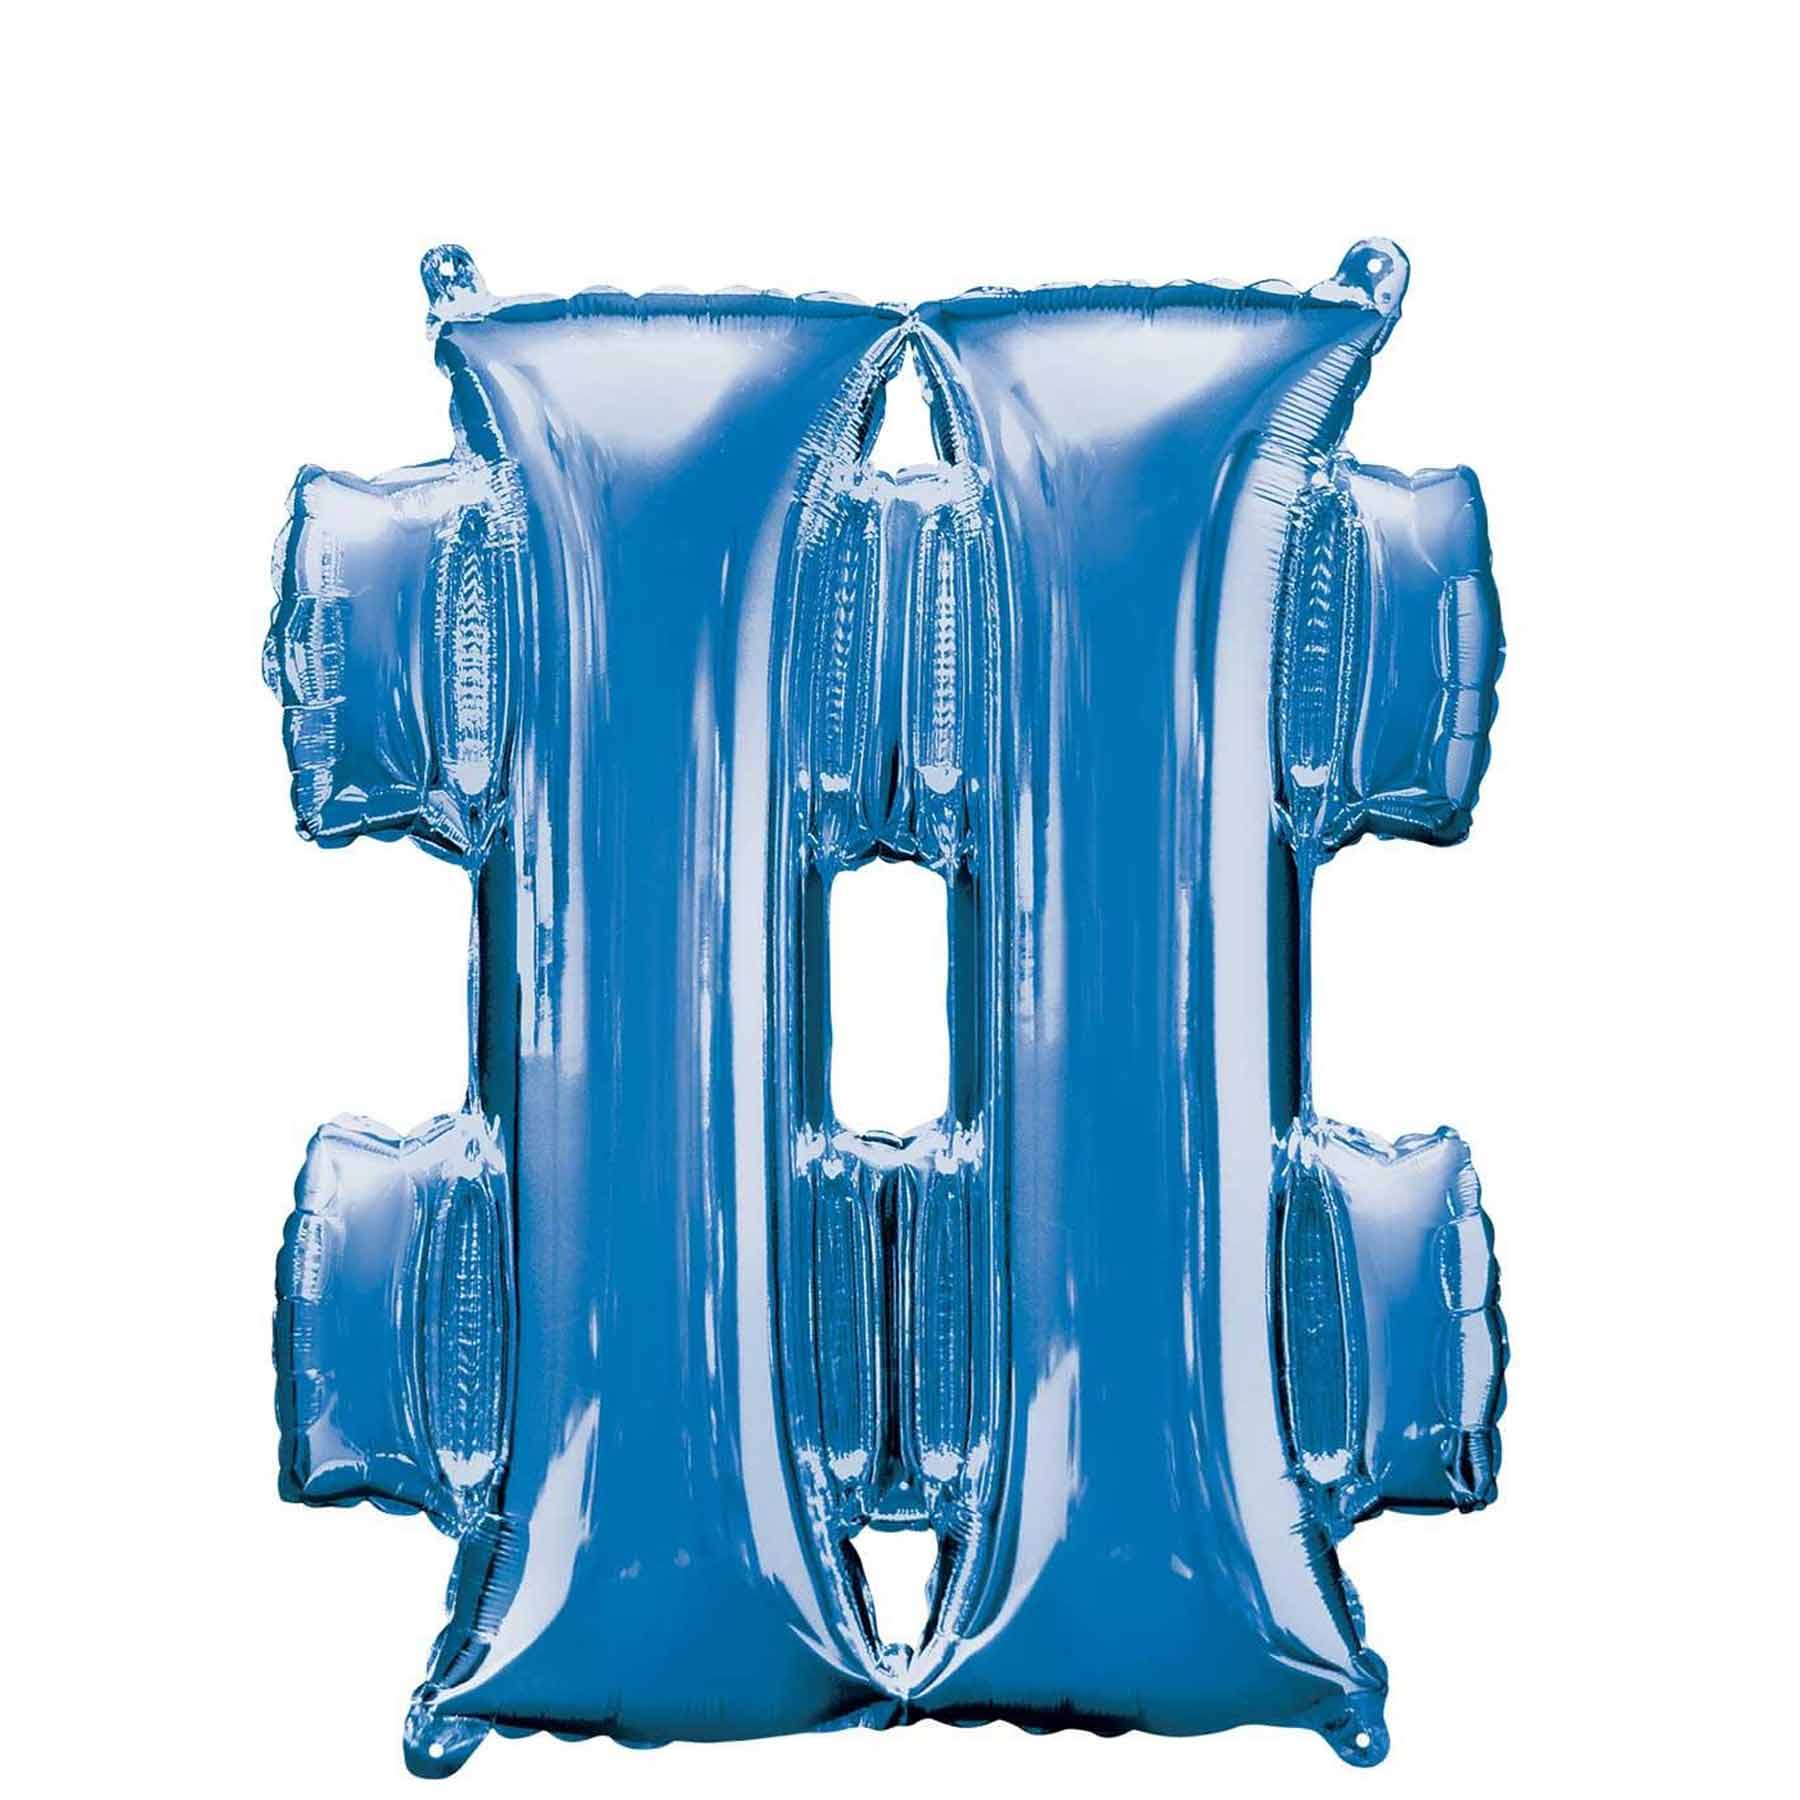 Blue Number Mini shape Foil Balloons - Party Centre